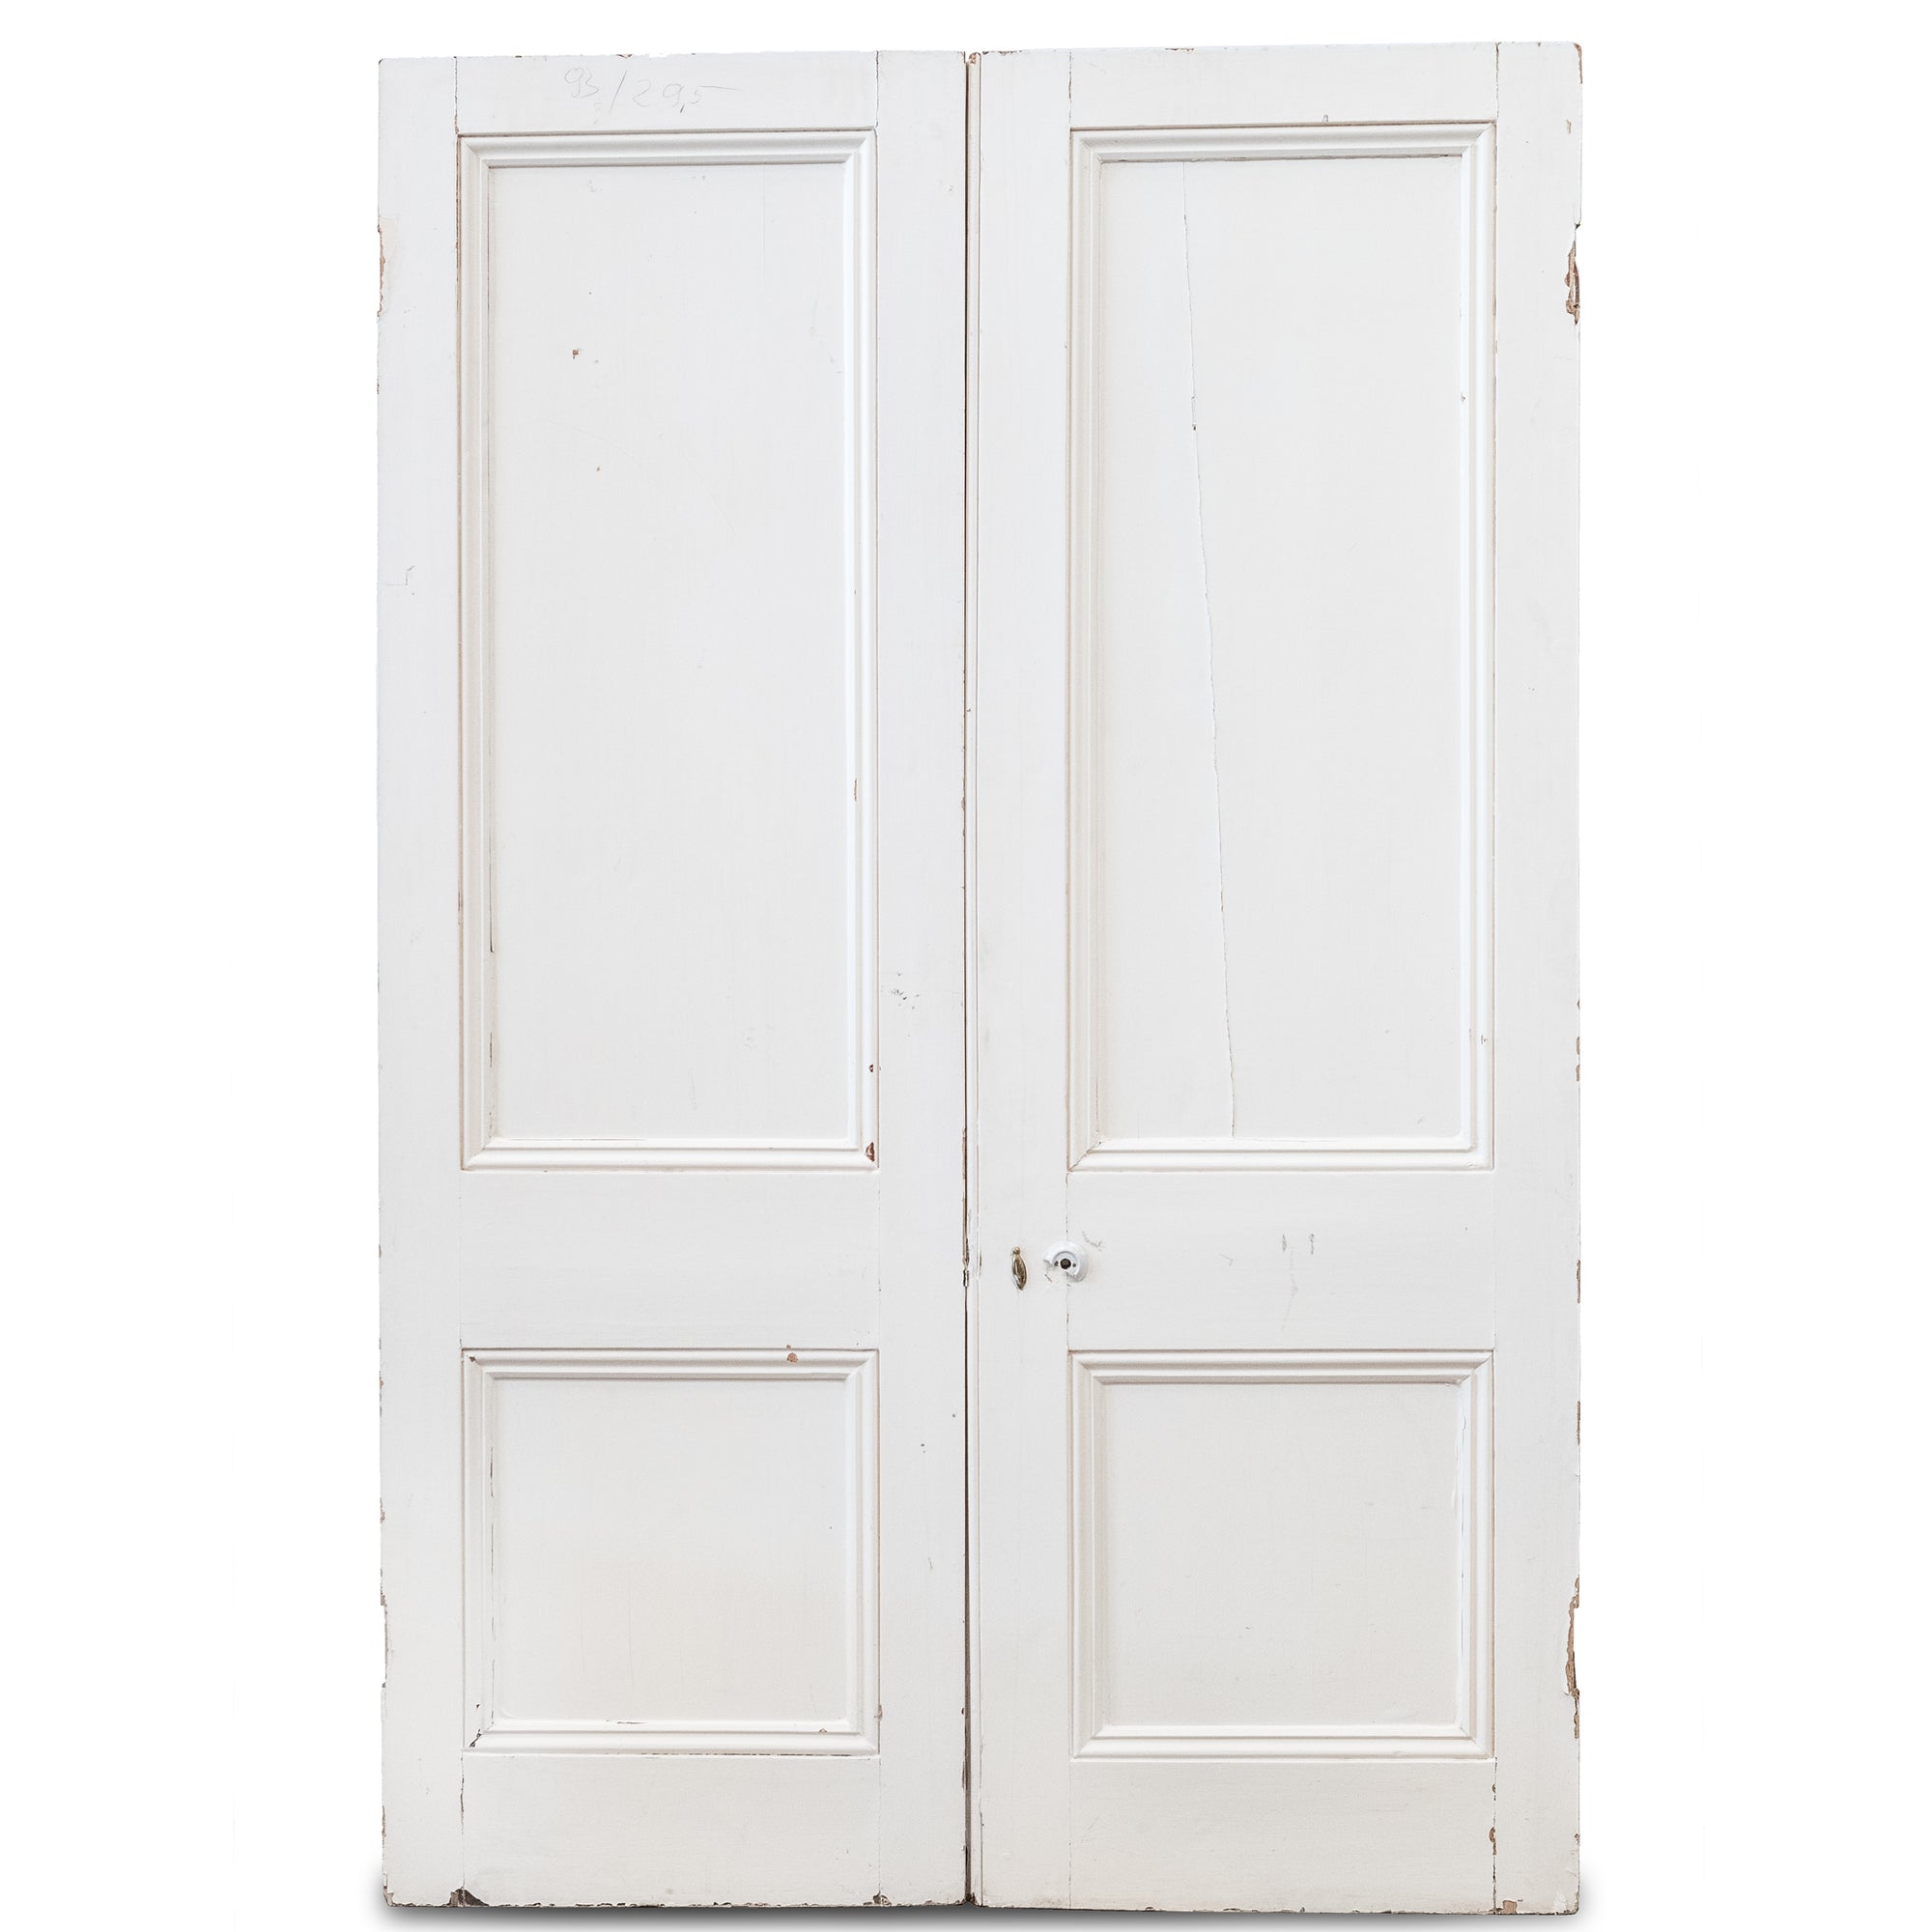 Antique Pine Double Doors 232.5cm x 151.5cm | The Architectural Forum